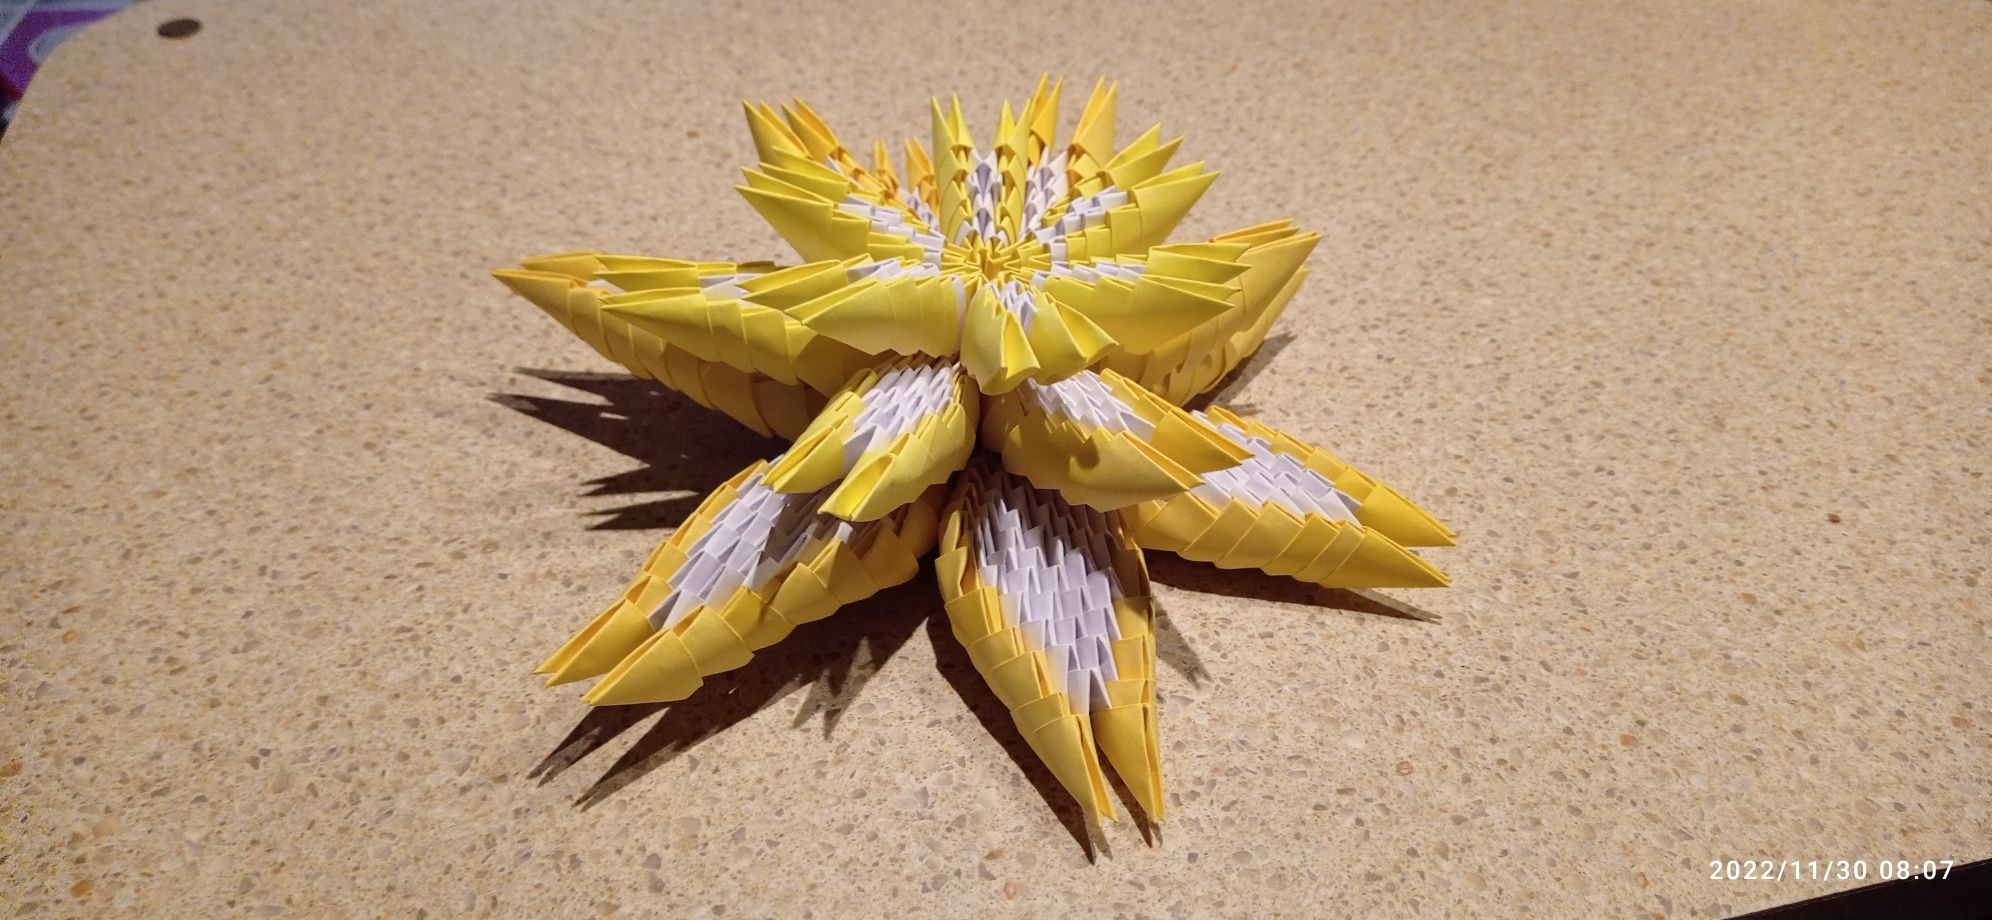 Kwiat lotosu z origami modułowego.